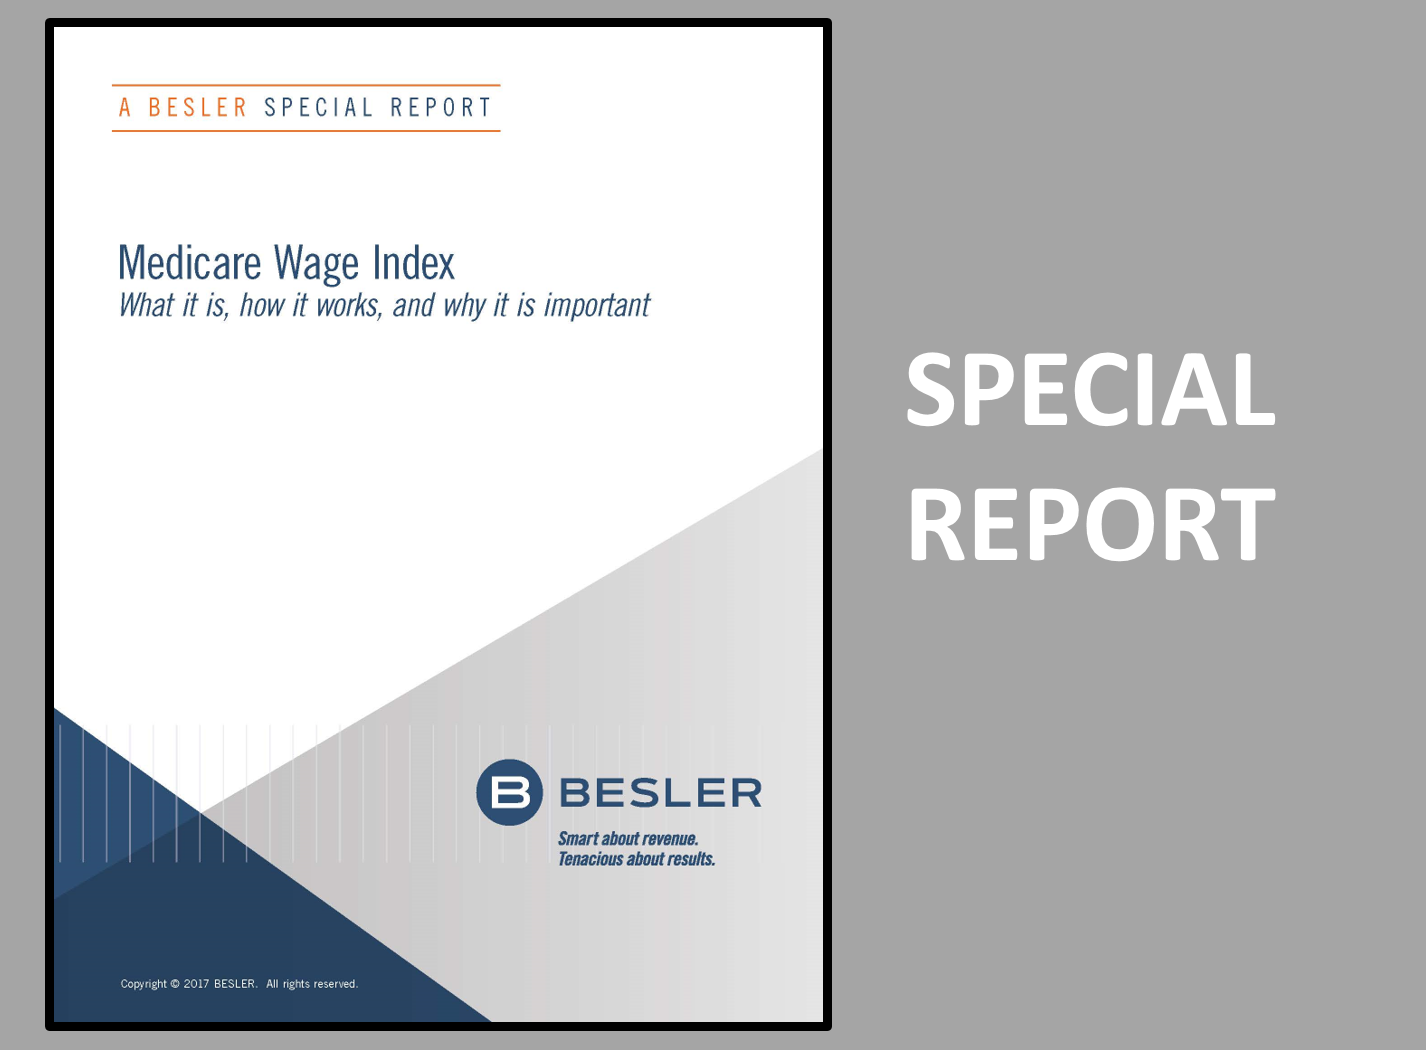 Medicare Wage Index Special Report BESLER Reimbursement